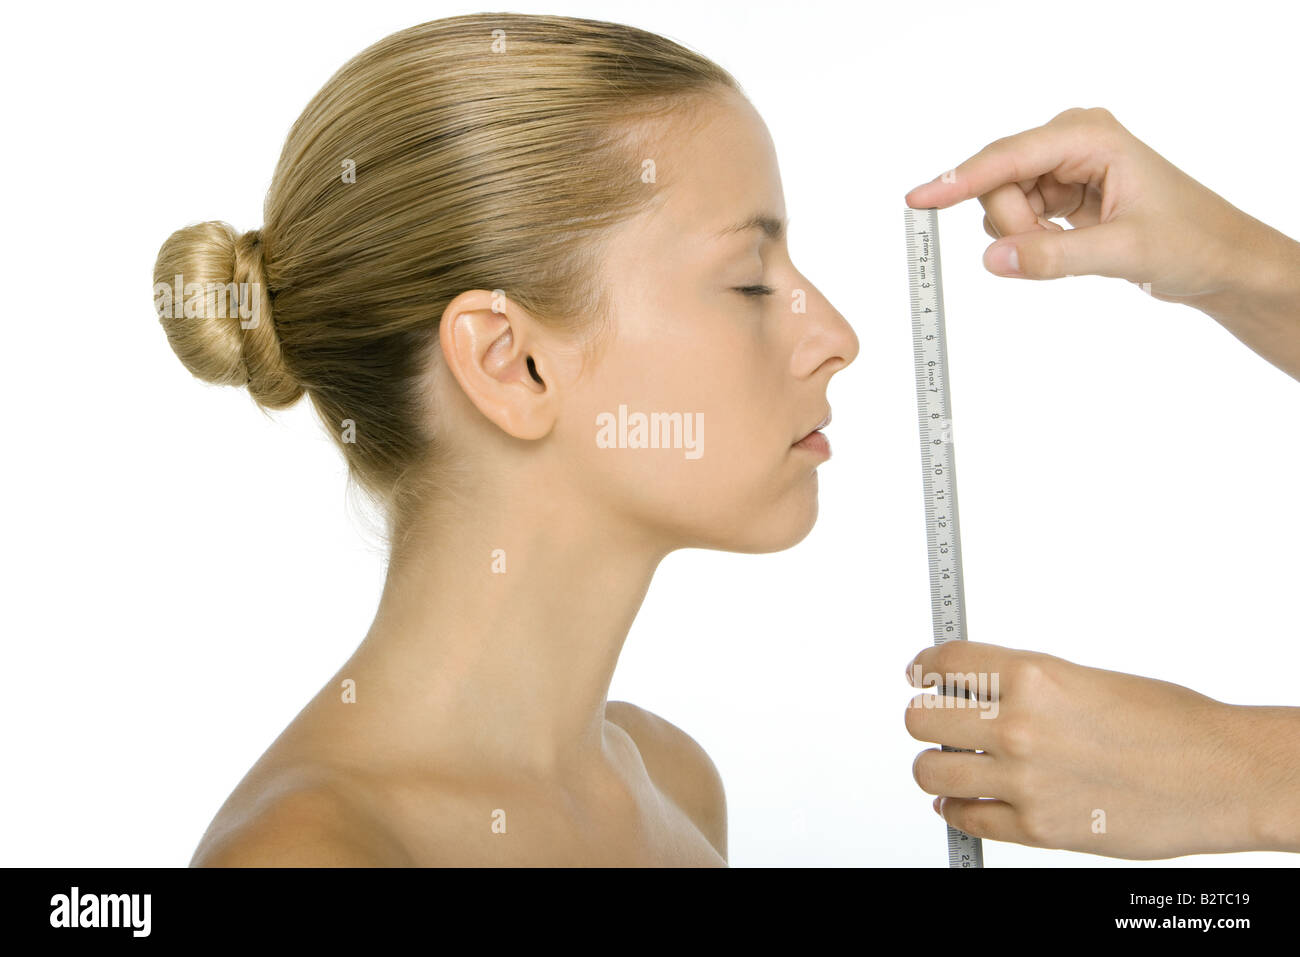 Frau im Profil, Gesicht mit Lineal gemessen wird Stockfoto